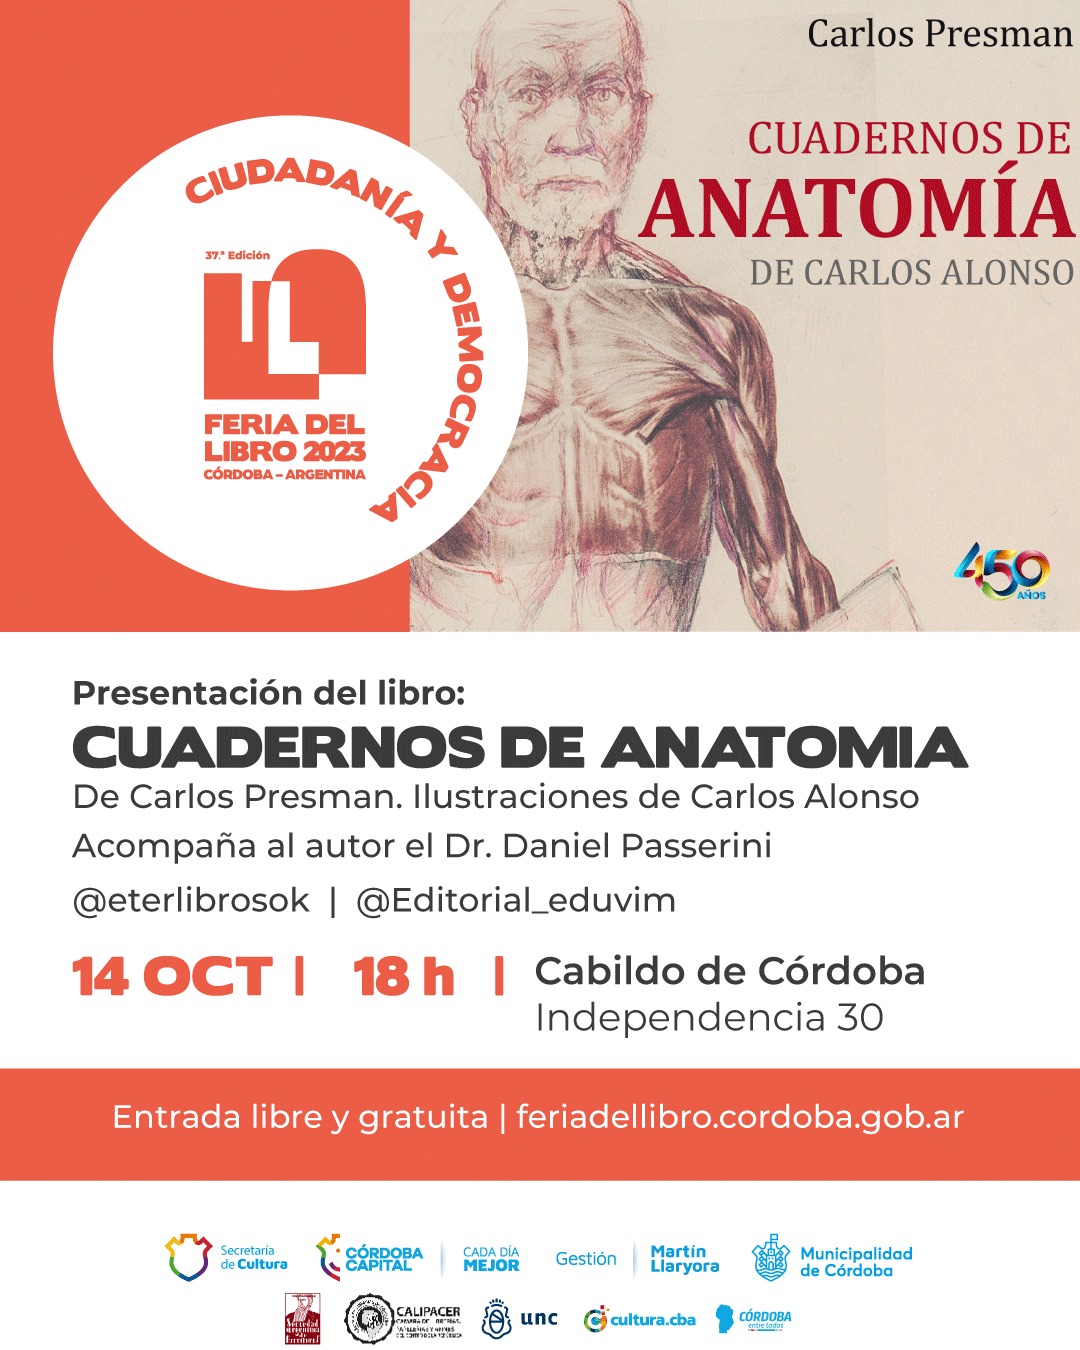 Se presenta “Cuadernos de anatomía de Carlos Alonso” en la grilla oficial de la Feria del Libro de Córdoba